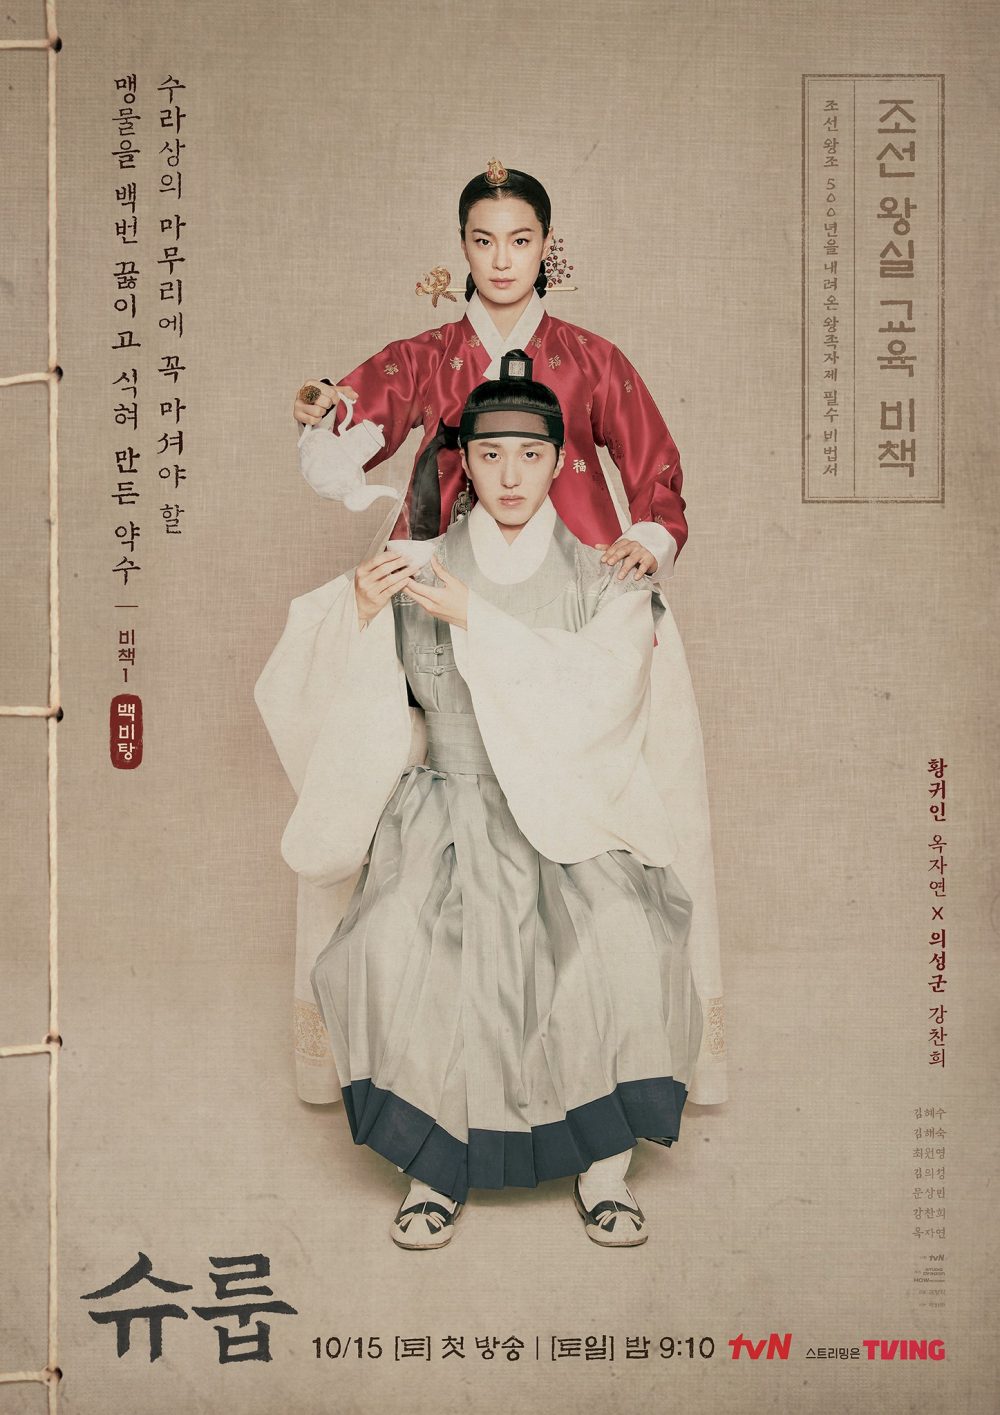 harper bazaar review phim duoi bong trung dien under the queens umbrella 11 e1666098906777 - Dưới bóng trung điện và màn lột xác của “chị đại” Kim Hye Soo